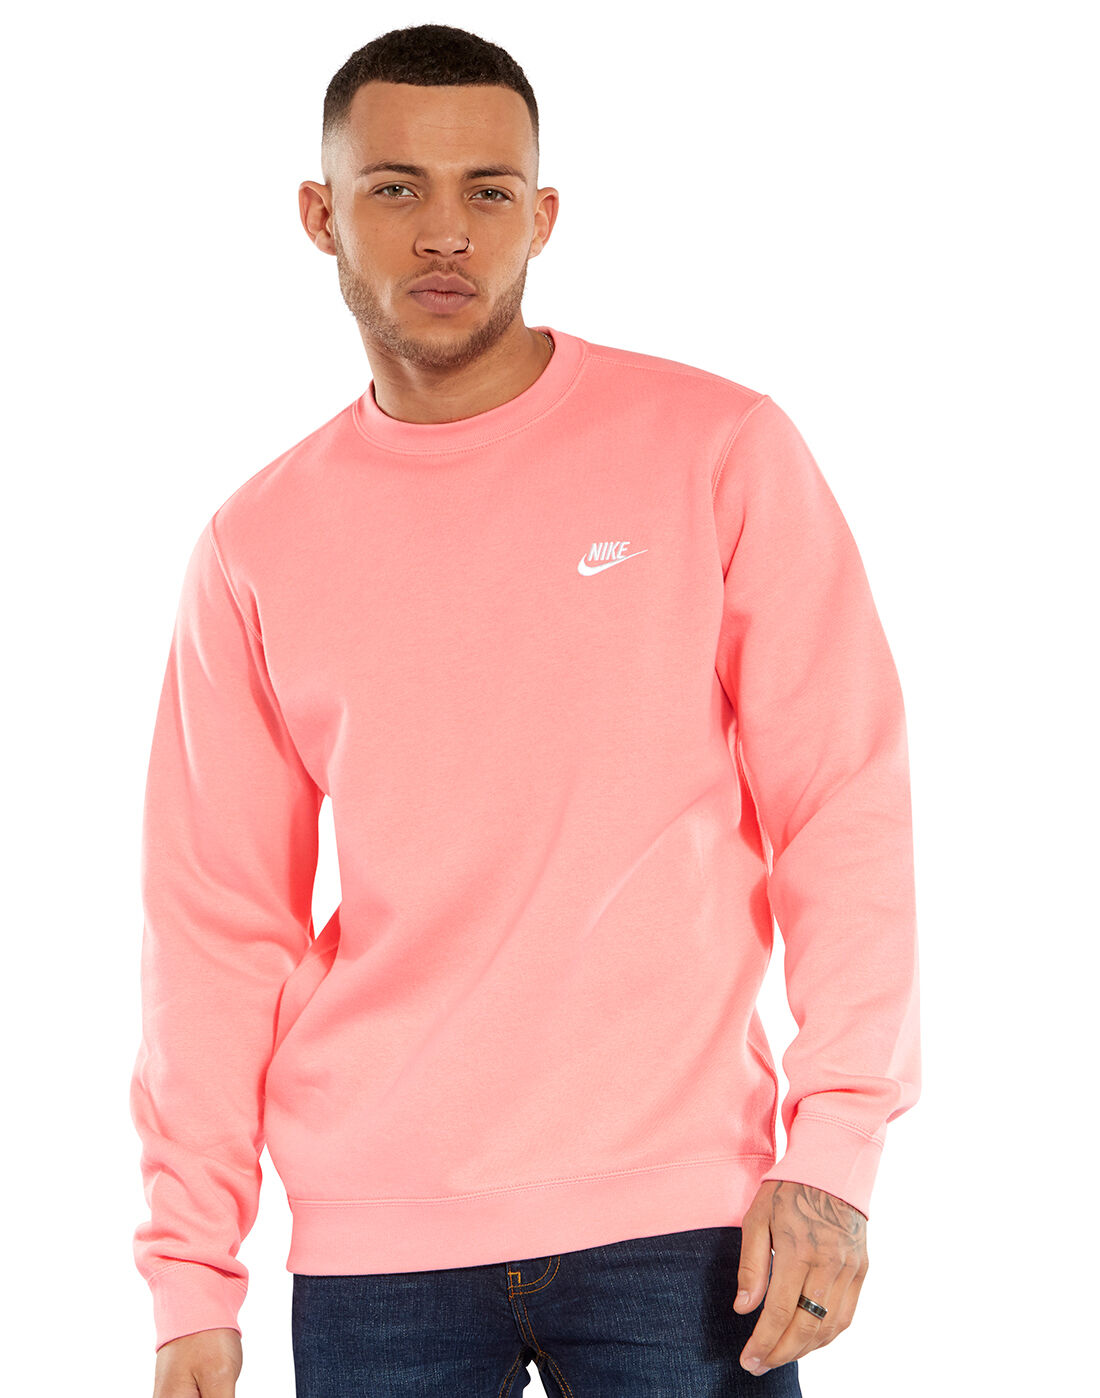 Men's Pink Nike Crew Sweatshirt | Life 